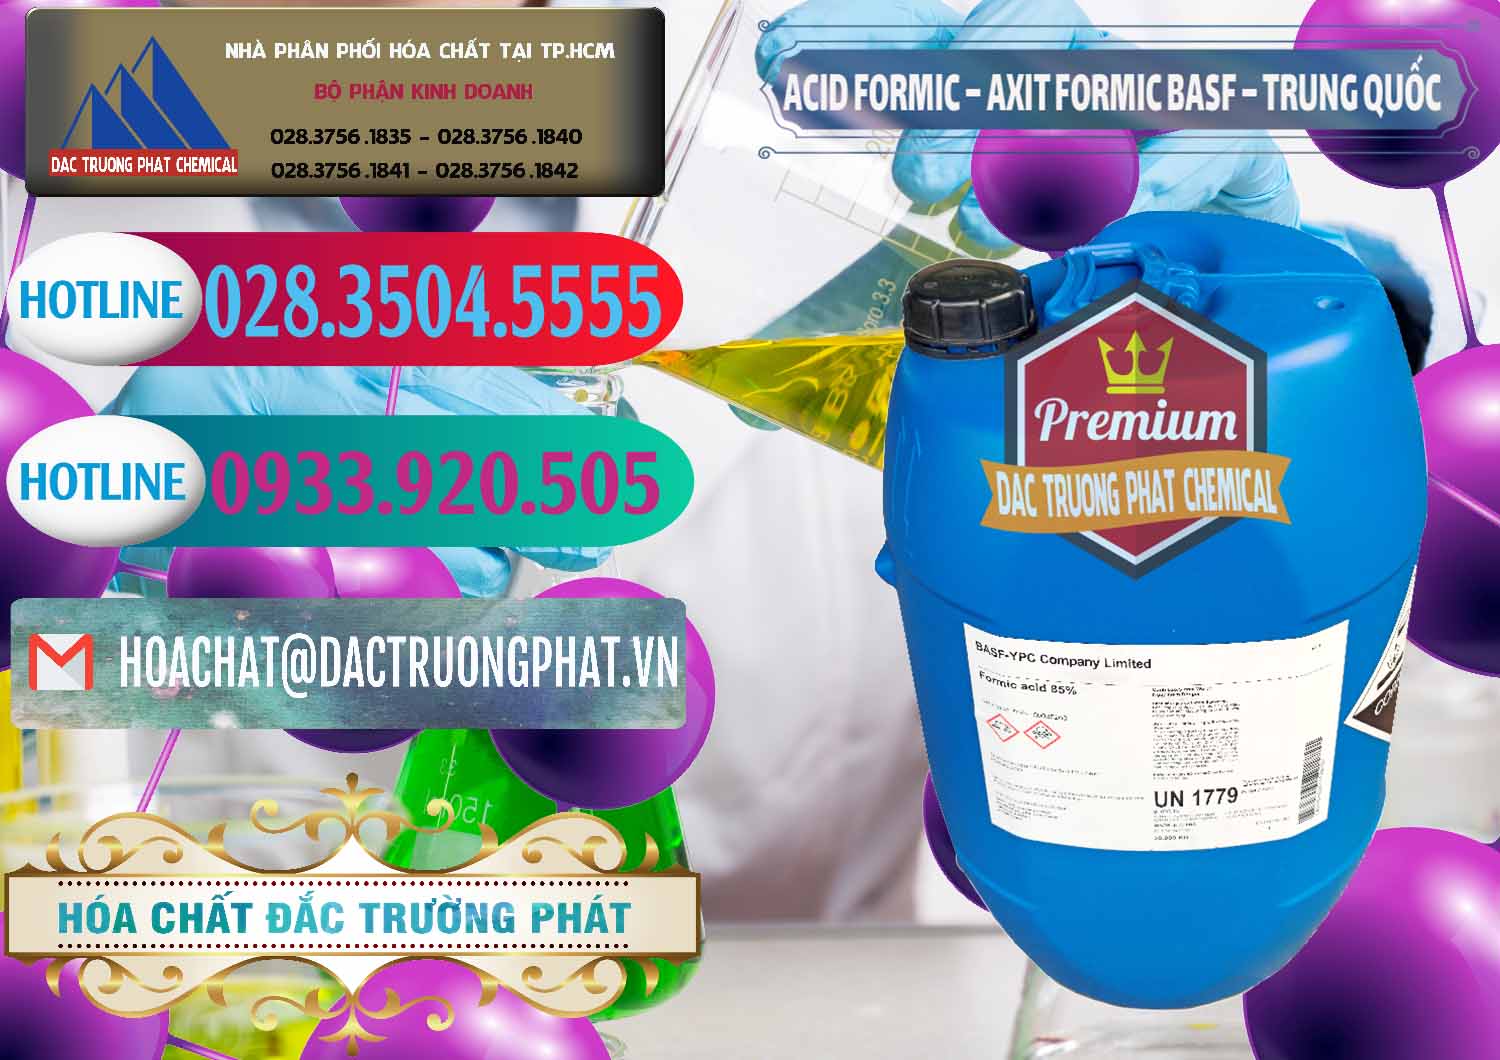 Cty chuyên bán - cung cấp Acid Formic - Axit Formic BASF Trung Quốc China - 0025 - Nhà phân phối và cung cấp hóa chất tại TP.HCM - truongphat.vn